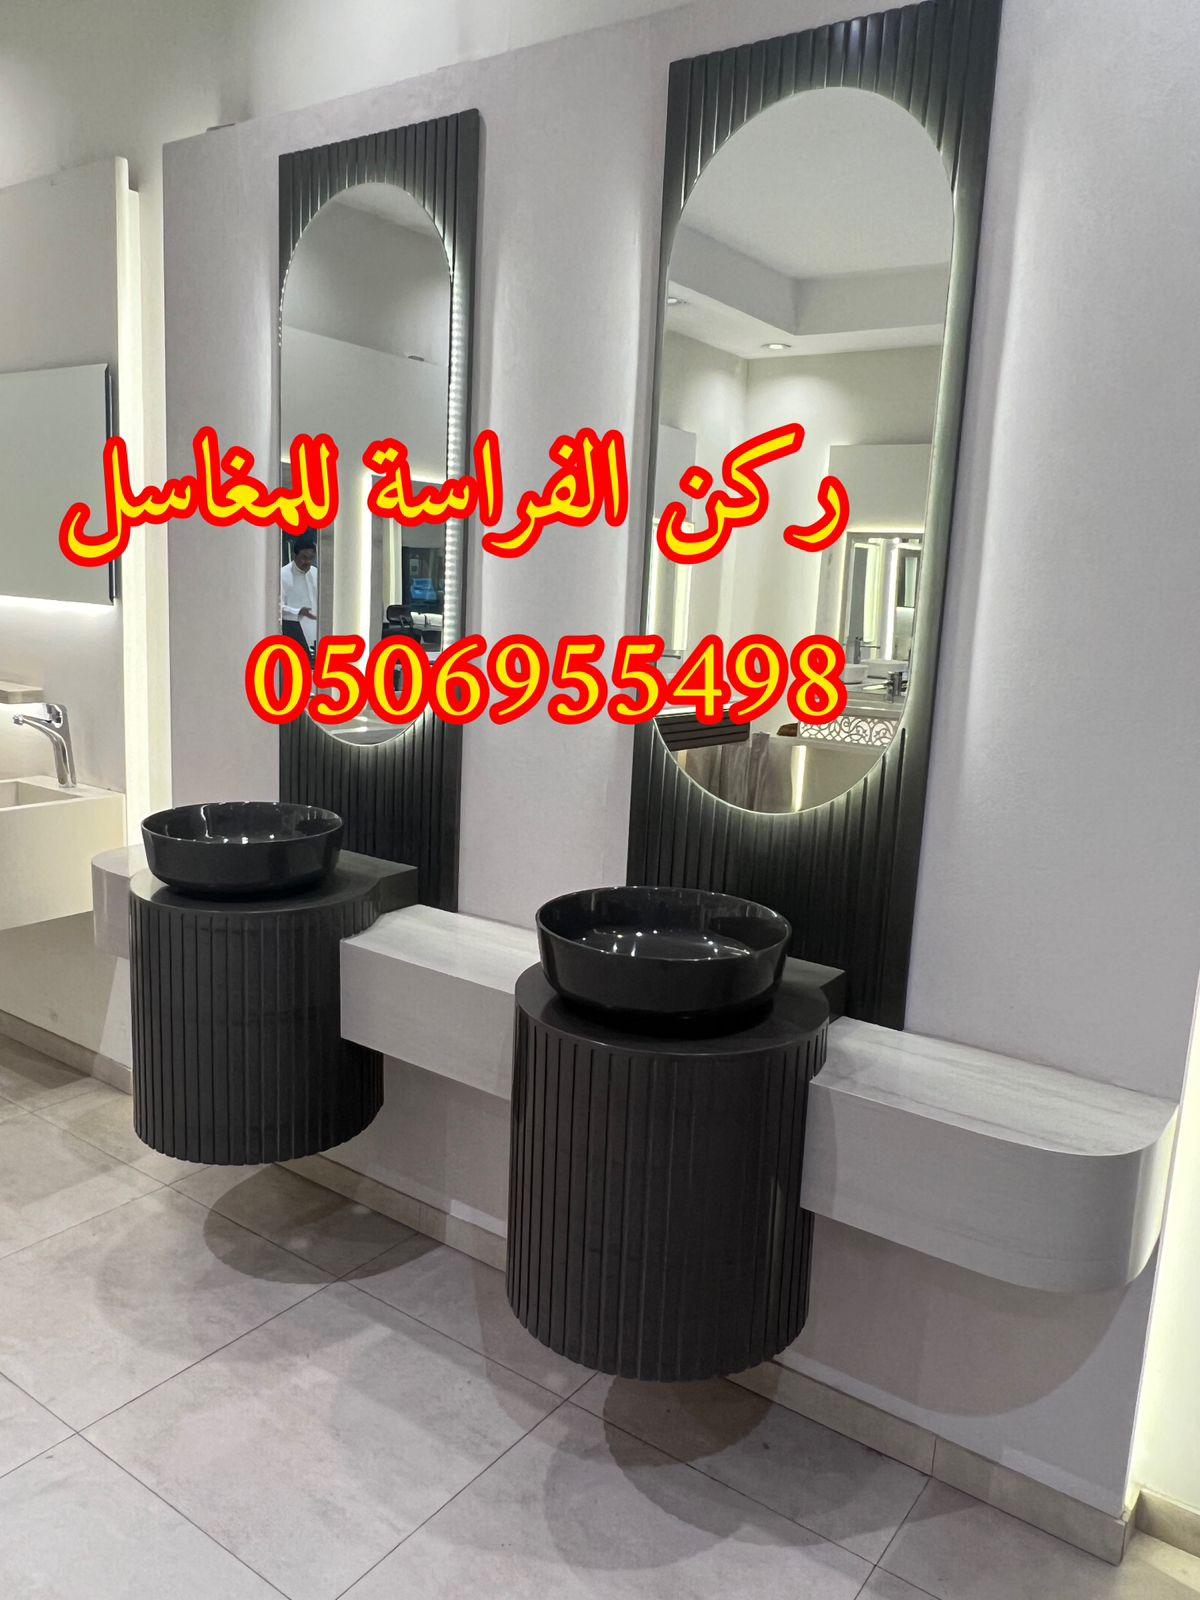 الرياض - مغاسل حمامات رخام مودرن فخمة في الرياض,0506955498 618148493